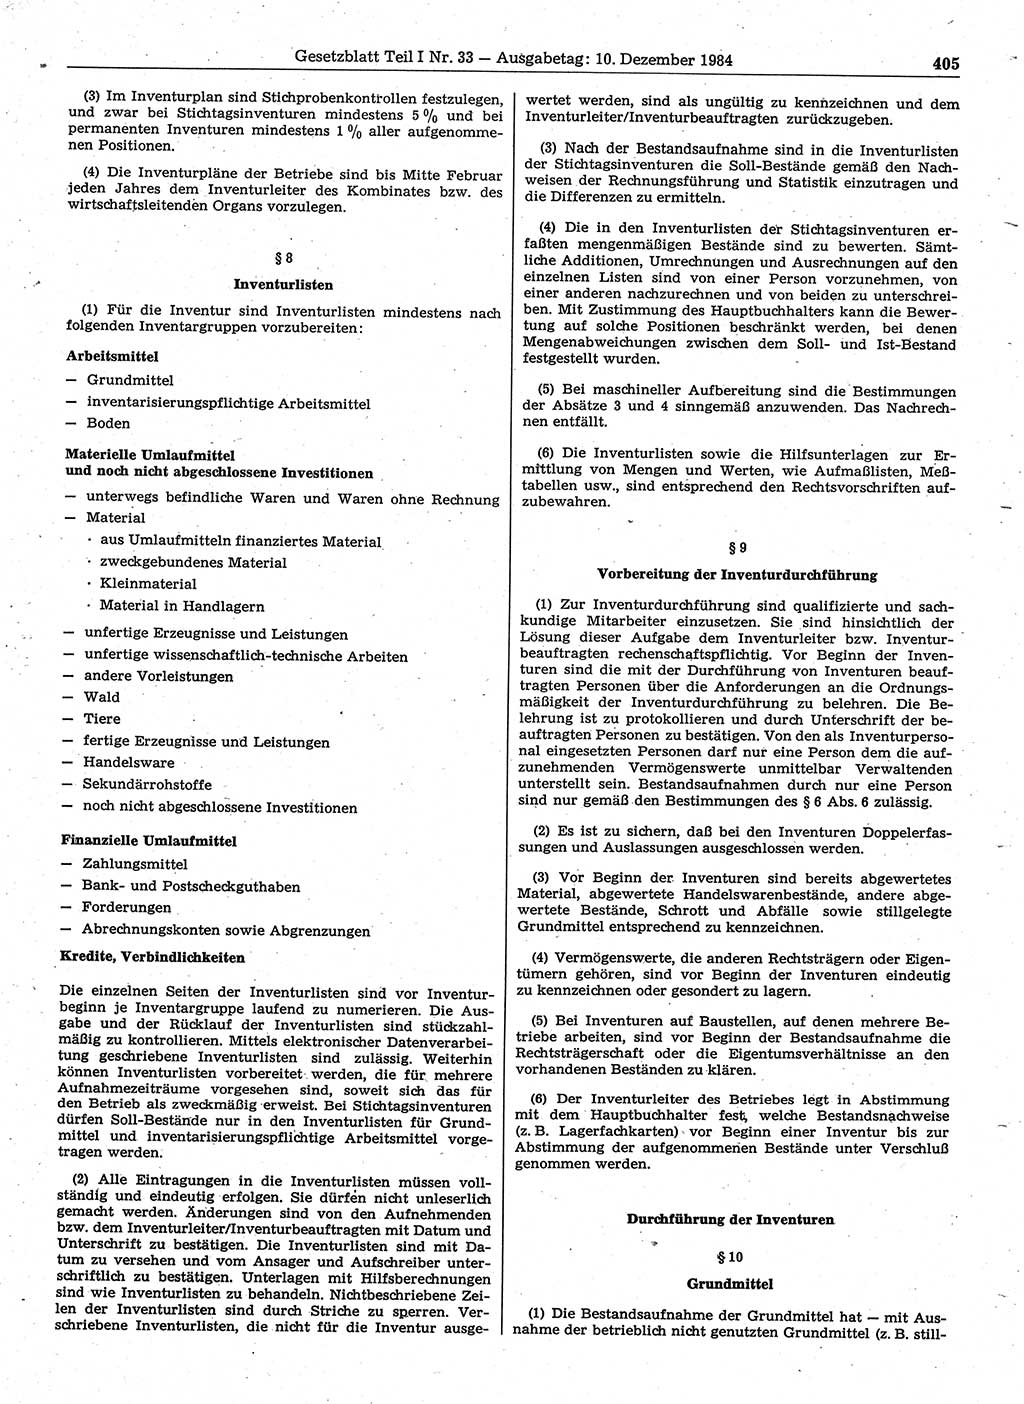 Gesetzblatt (GBl.) der Deutschen Demokratischen Republik (DDR) Teil Ⅰ 1984, Seite 405 (GBl. DDR Ⅰ 1984, S. 405)